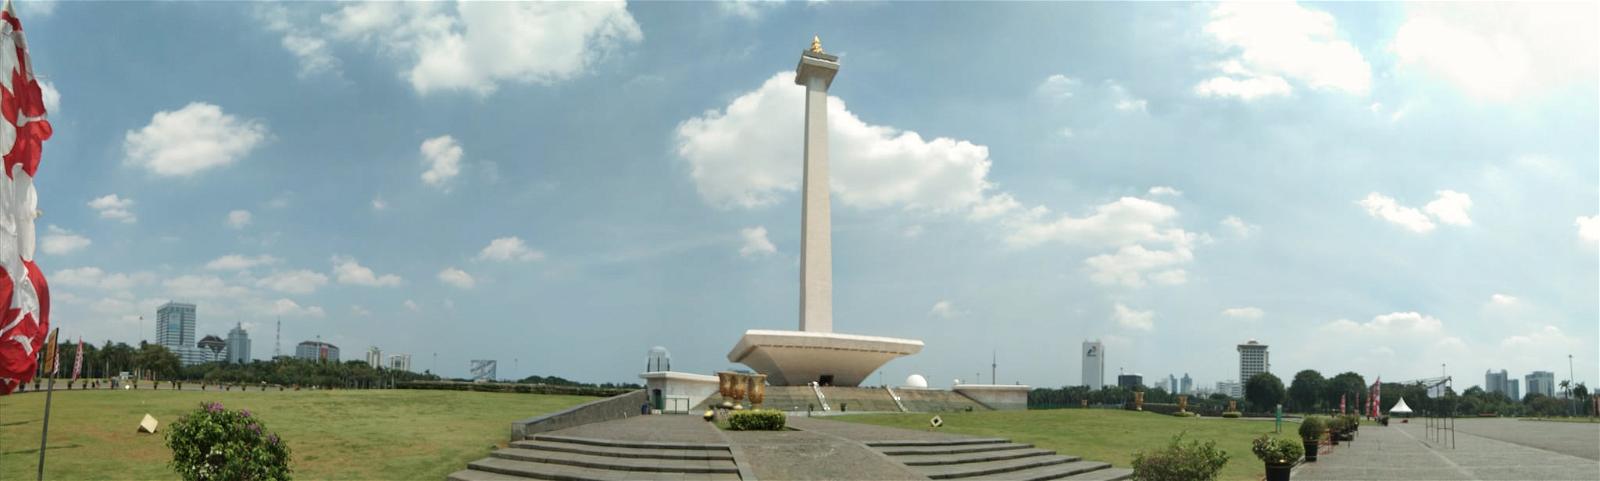 Изображение Monumen Nasional. 